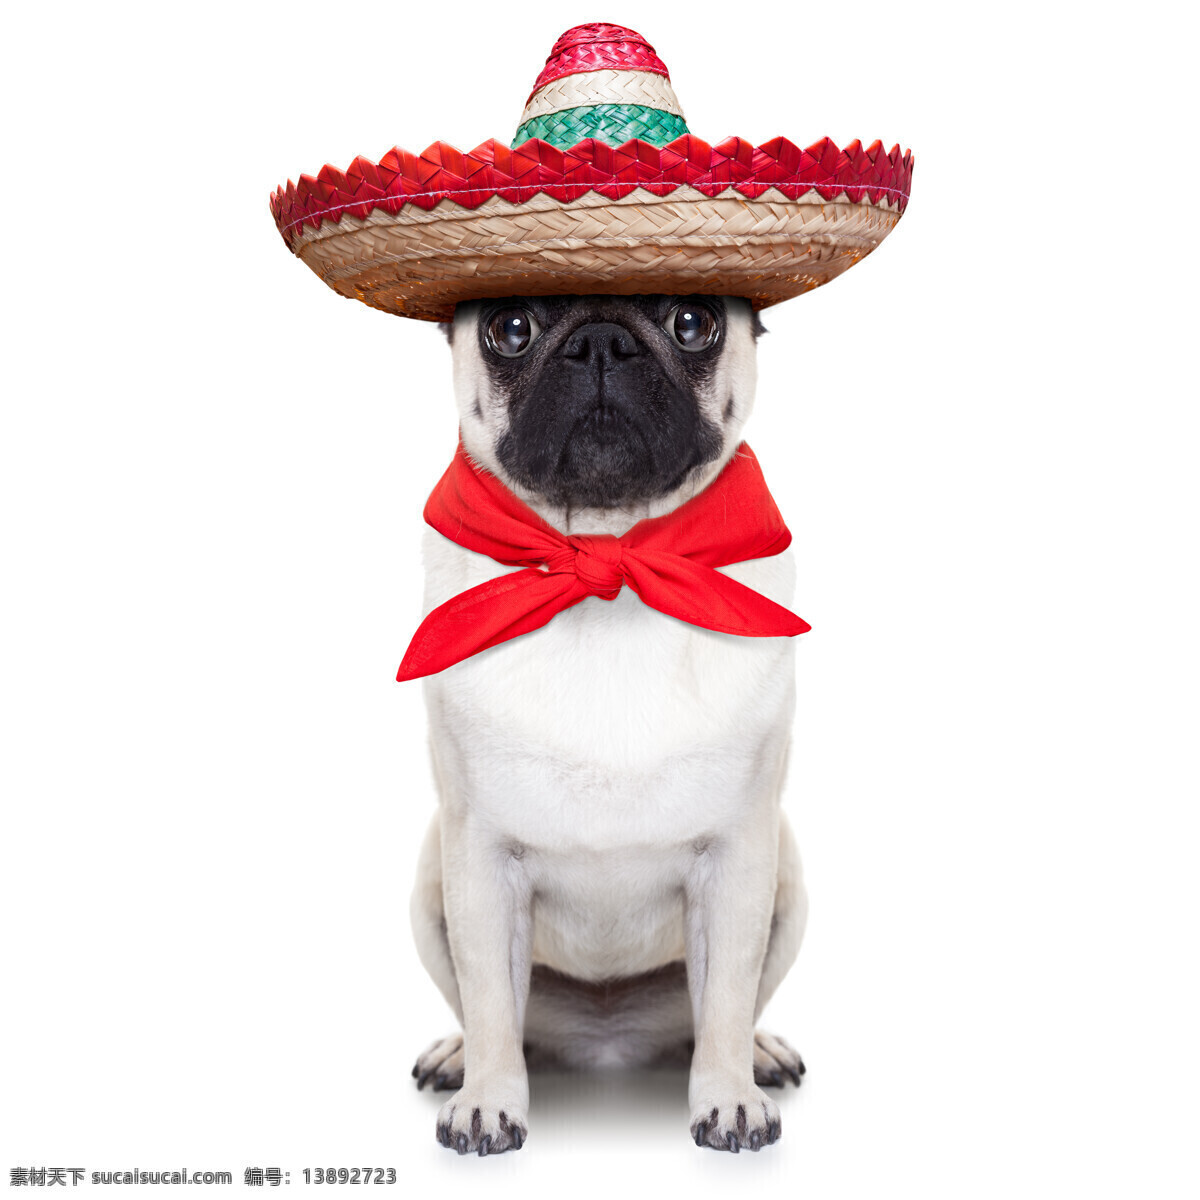 墨西哥小狗 小狗 衬衣 黑色 斗牛犬 沙皮狗 衬衫 墨西哥 动物 生物世界 家禽家畜